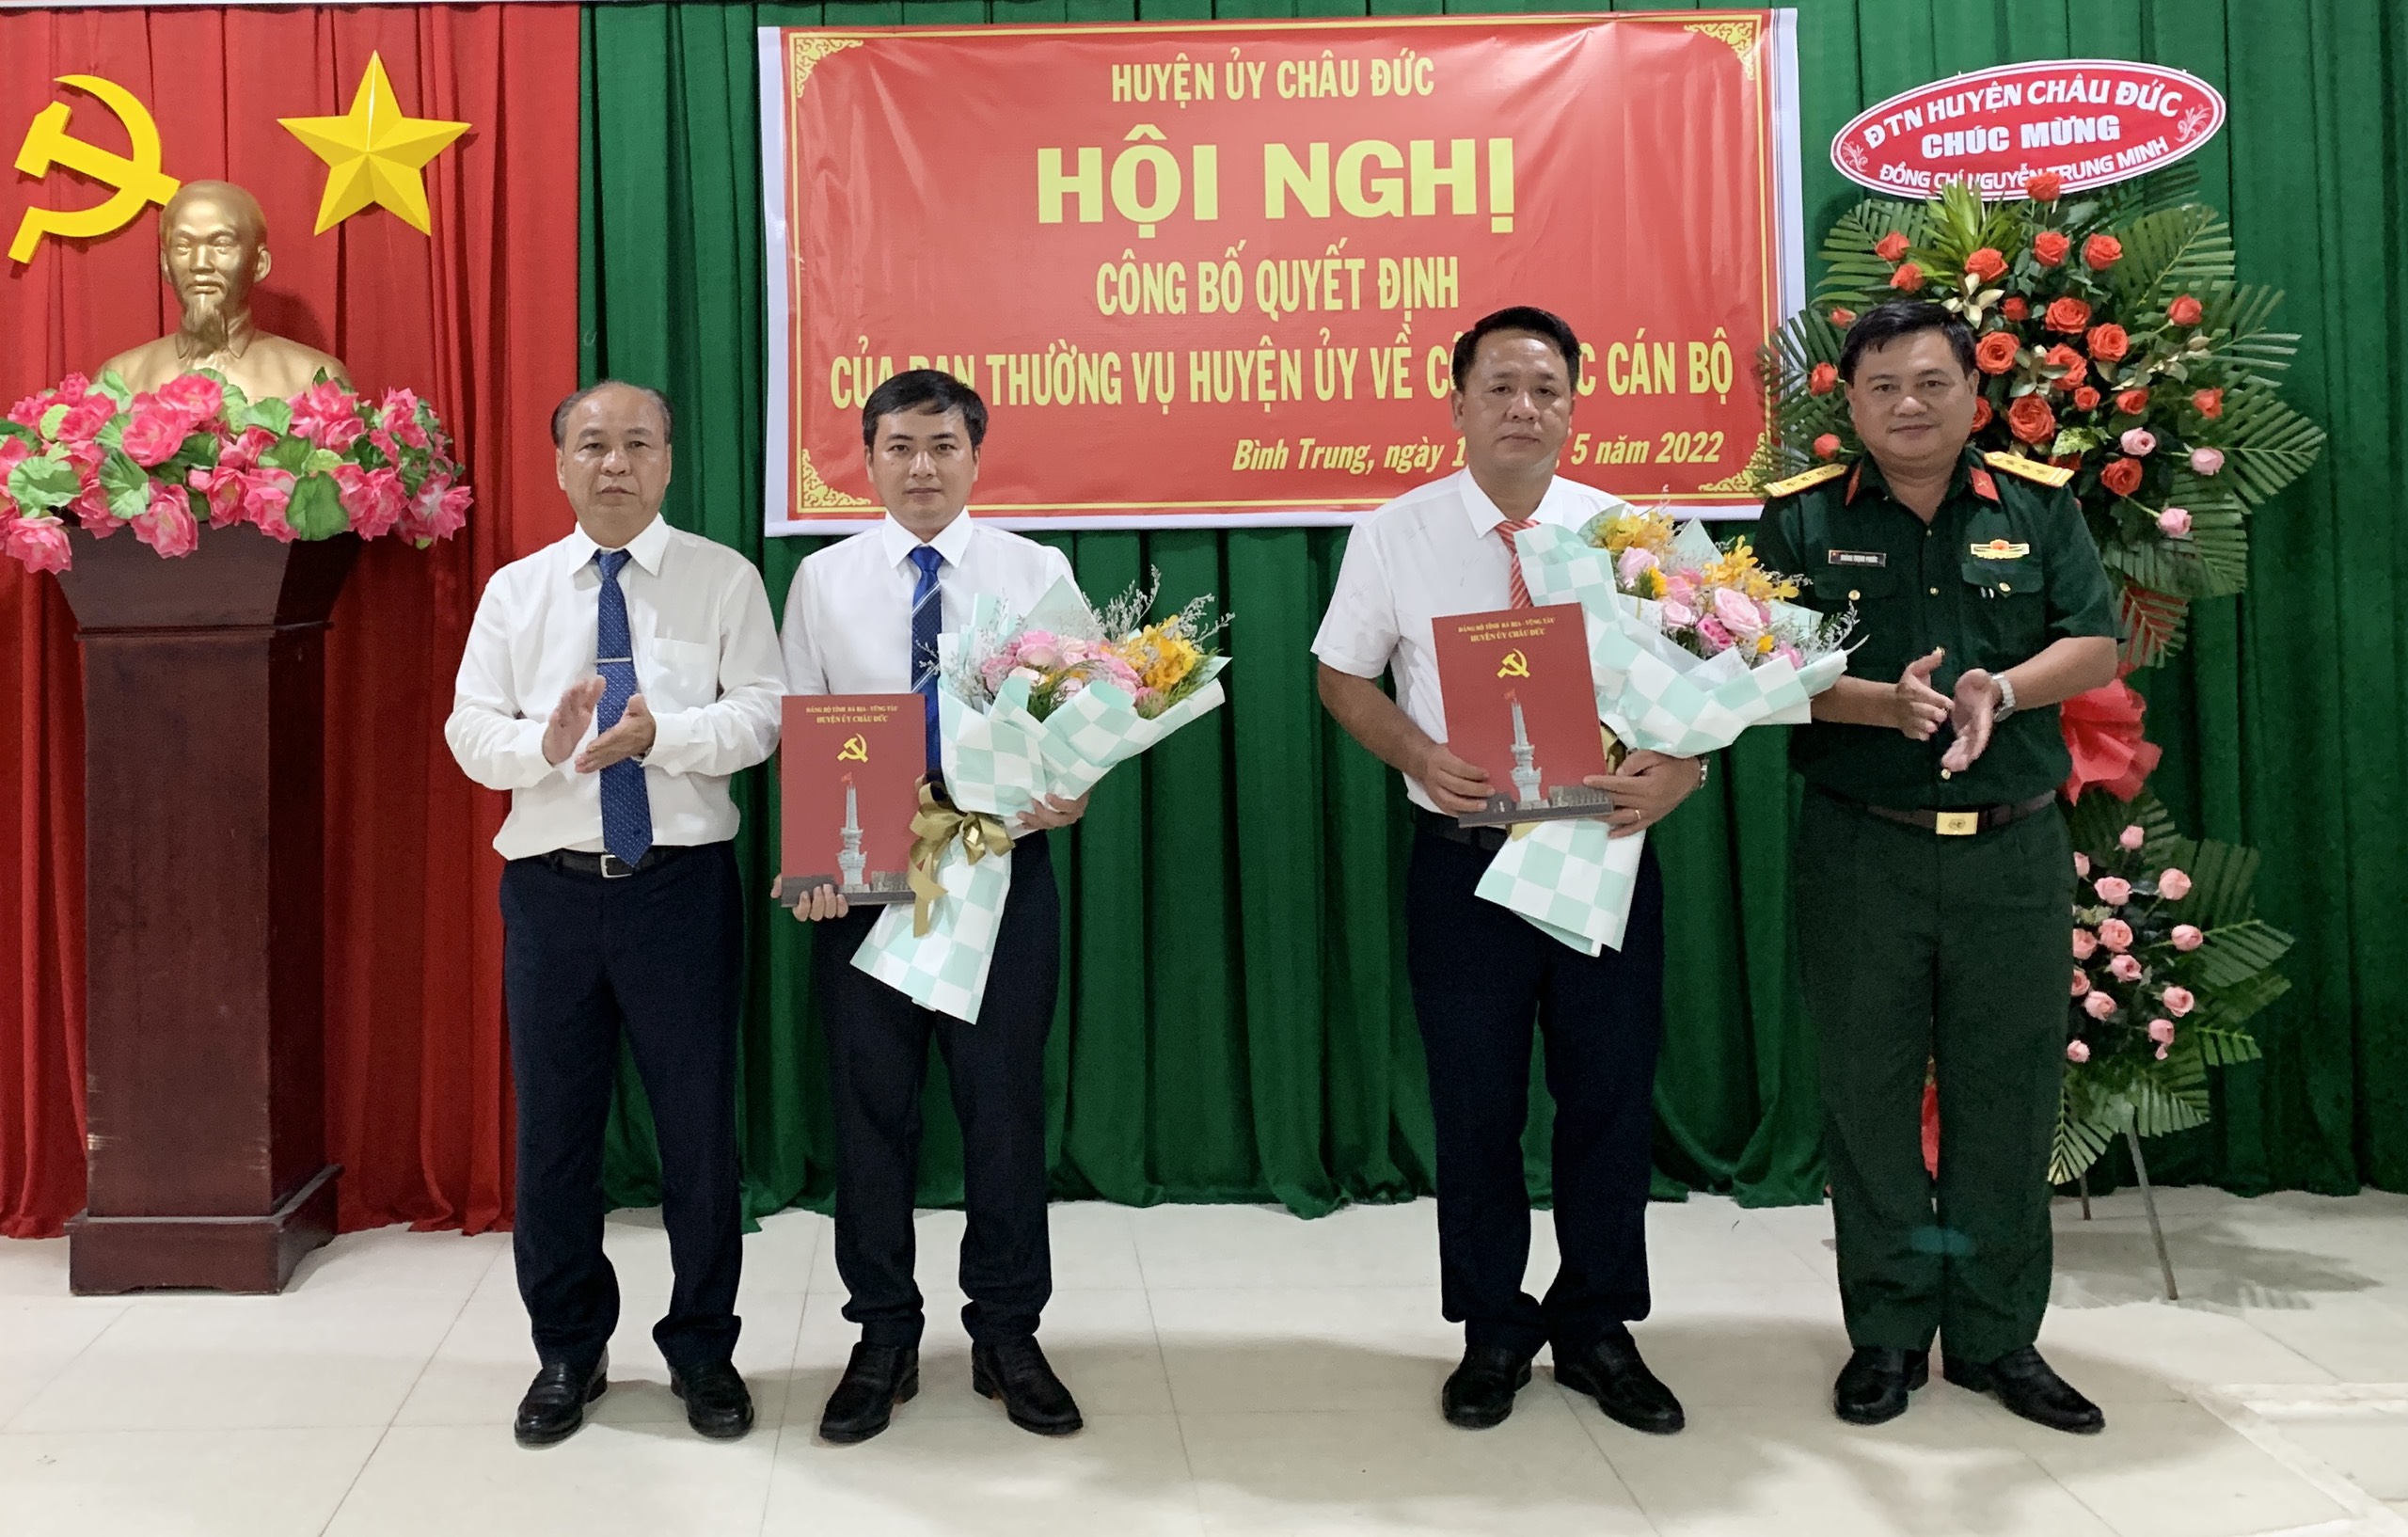 Ông Nguyễn Văn Việt (bìa trái), Bí thư Huyện ủy Châu Đức trao quyết định và tặng hoa chúc mừng 2 cán bộ vừa được điều động, giao nhiệm vụ.